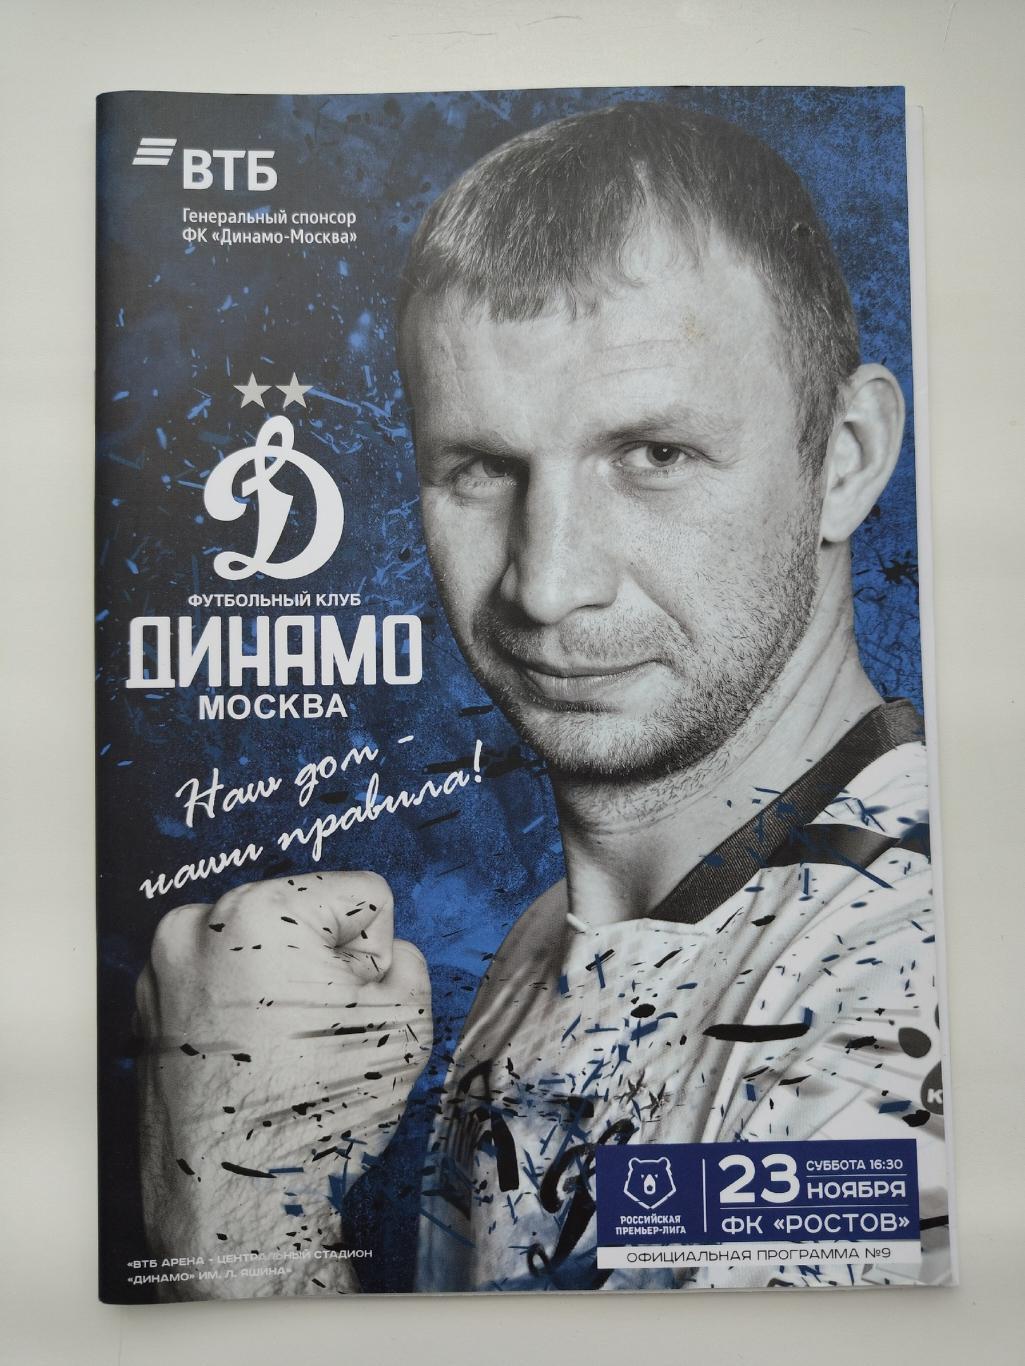 Динамо Москва - ФК Ростов 23 ноября 2019 (постер В.Рыков)